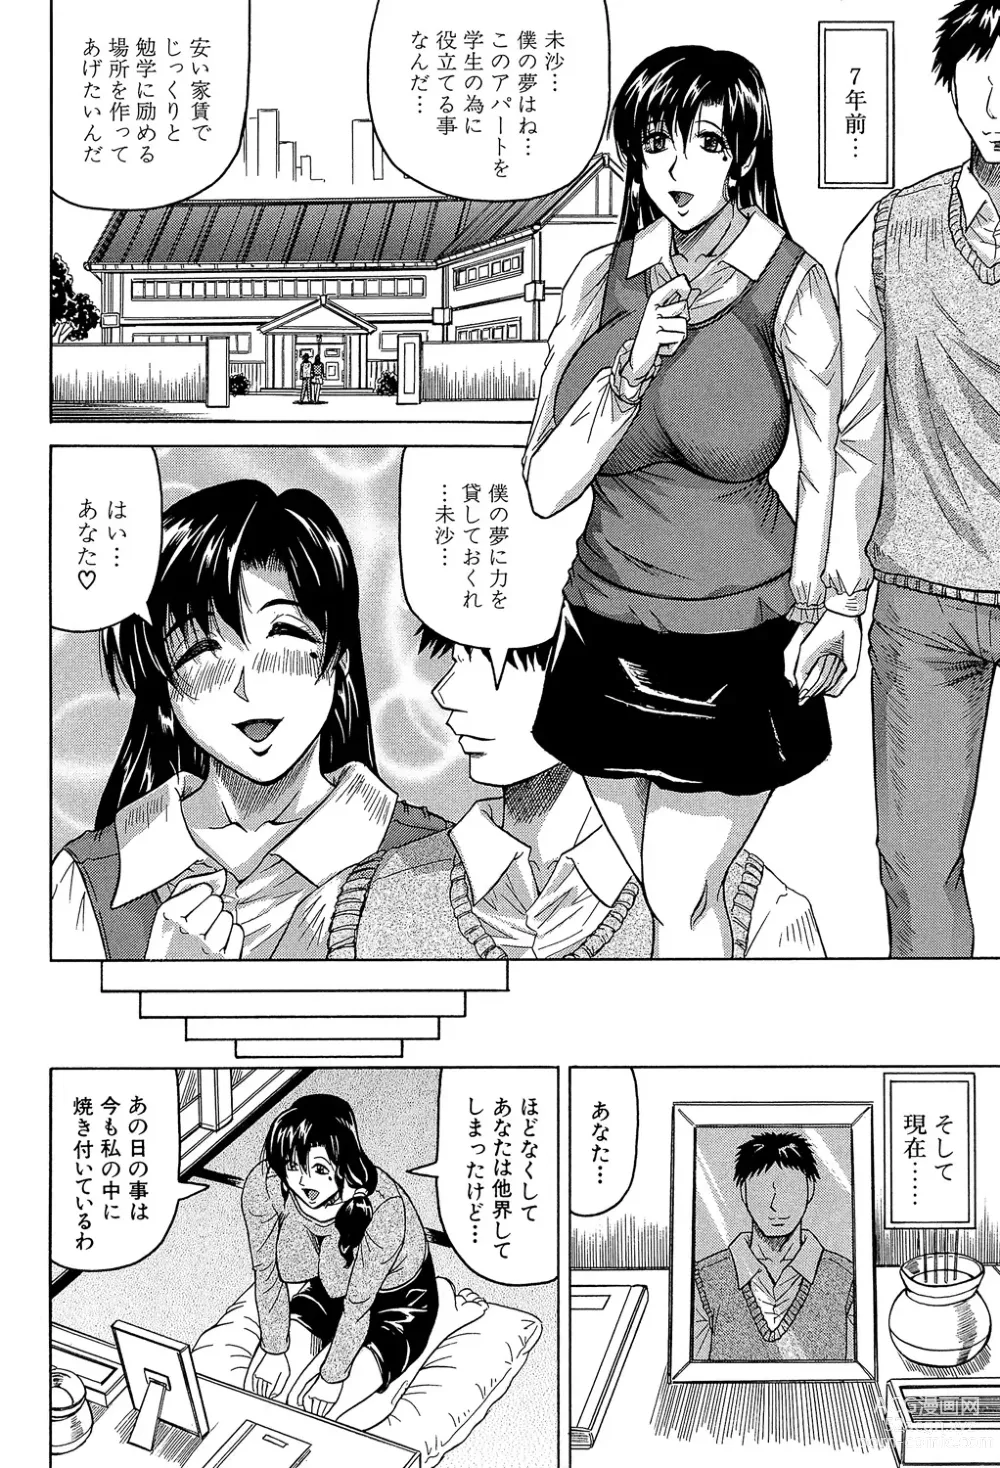 Page 5 of manga Mesu Jokukan no Miboujin